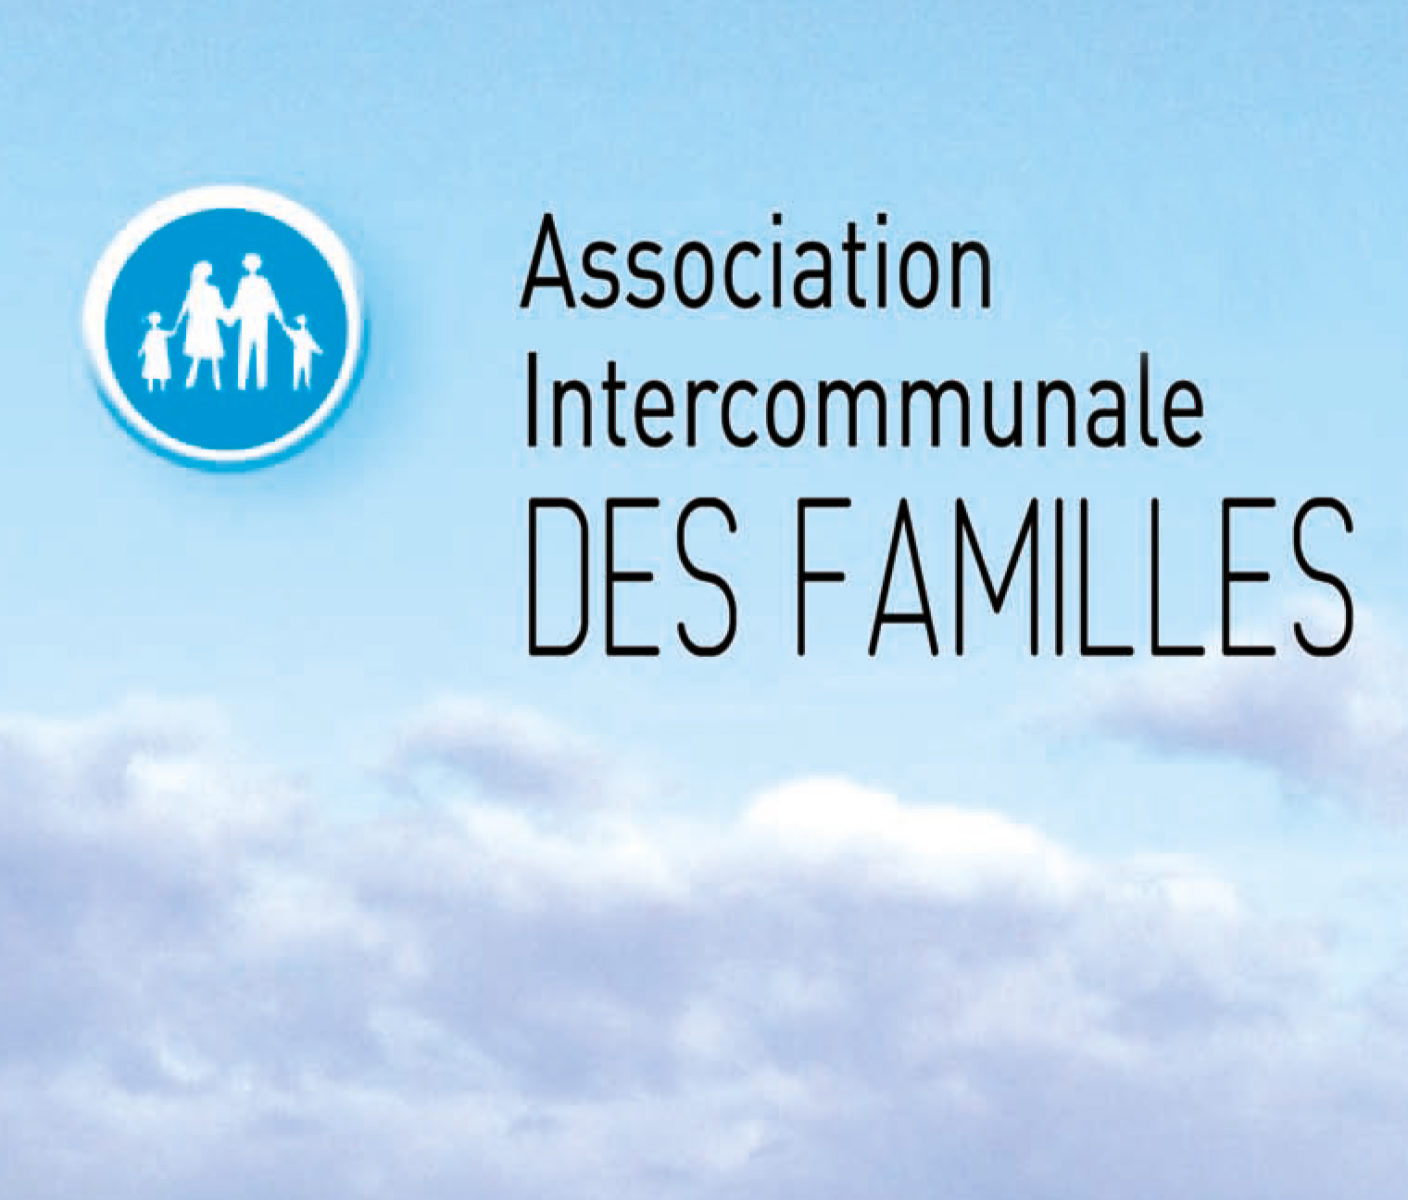 Association intercommunale des familles